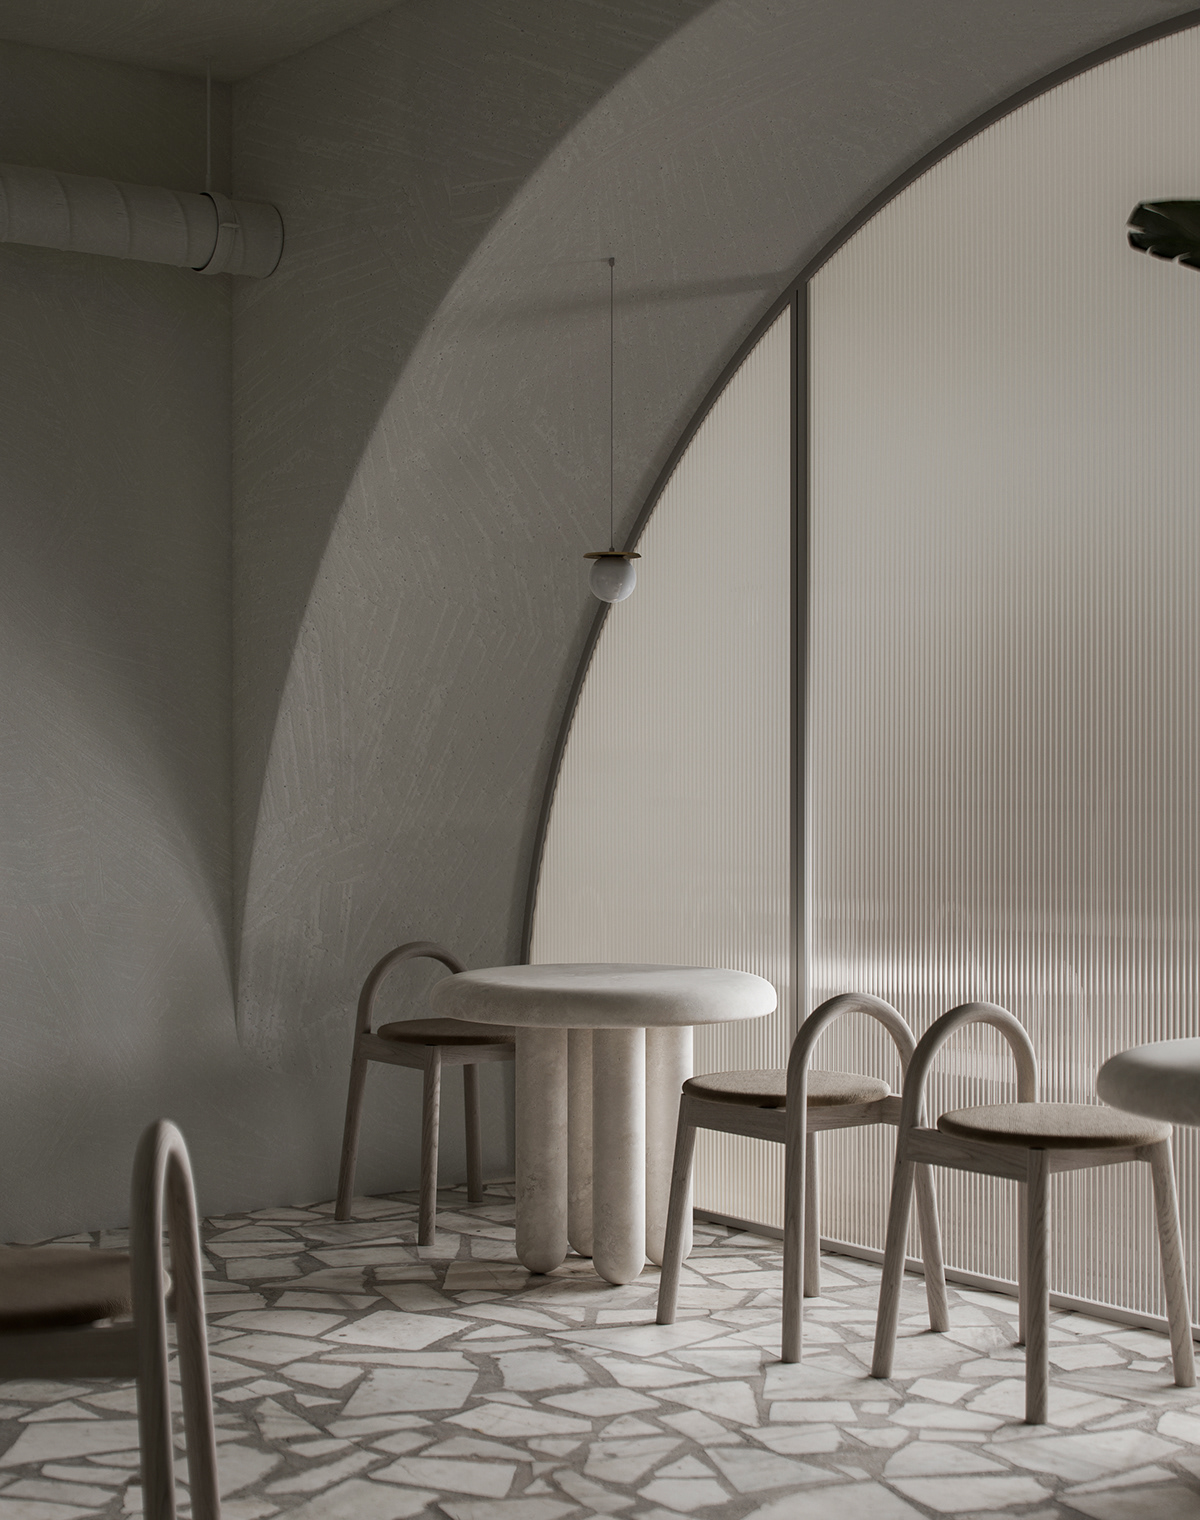 architecture bar Coffee conctete design Interior metal minimalsm restaurant visualization